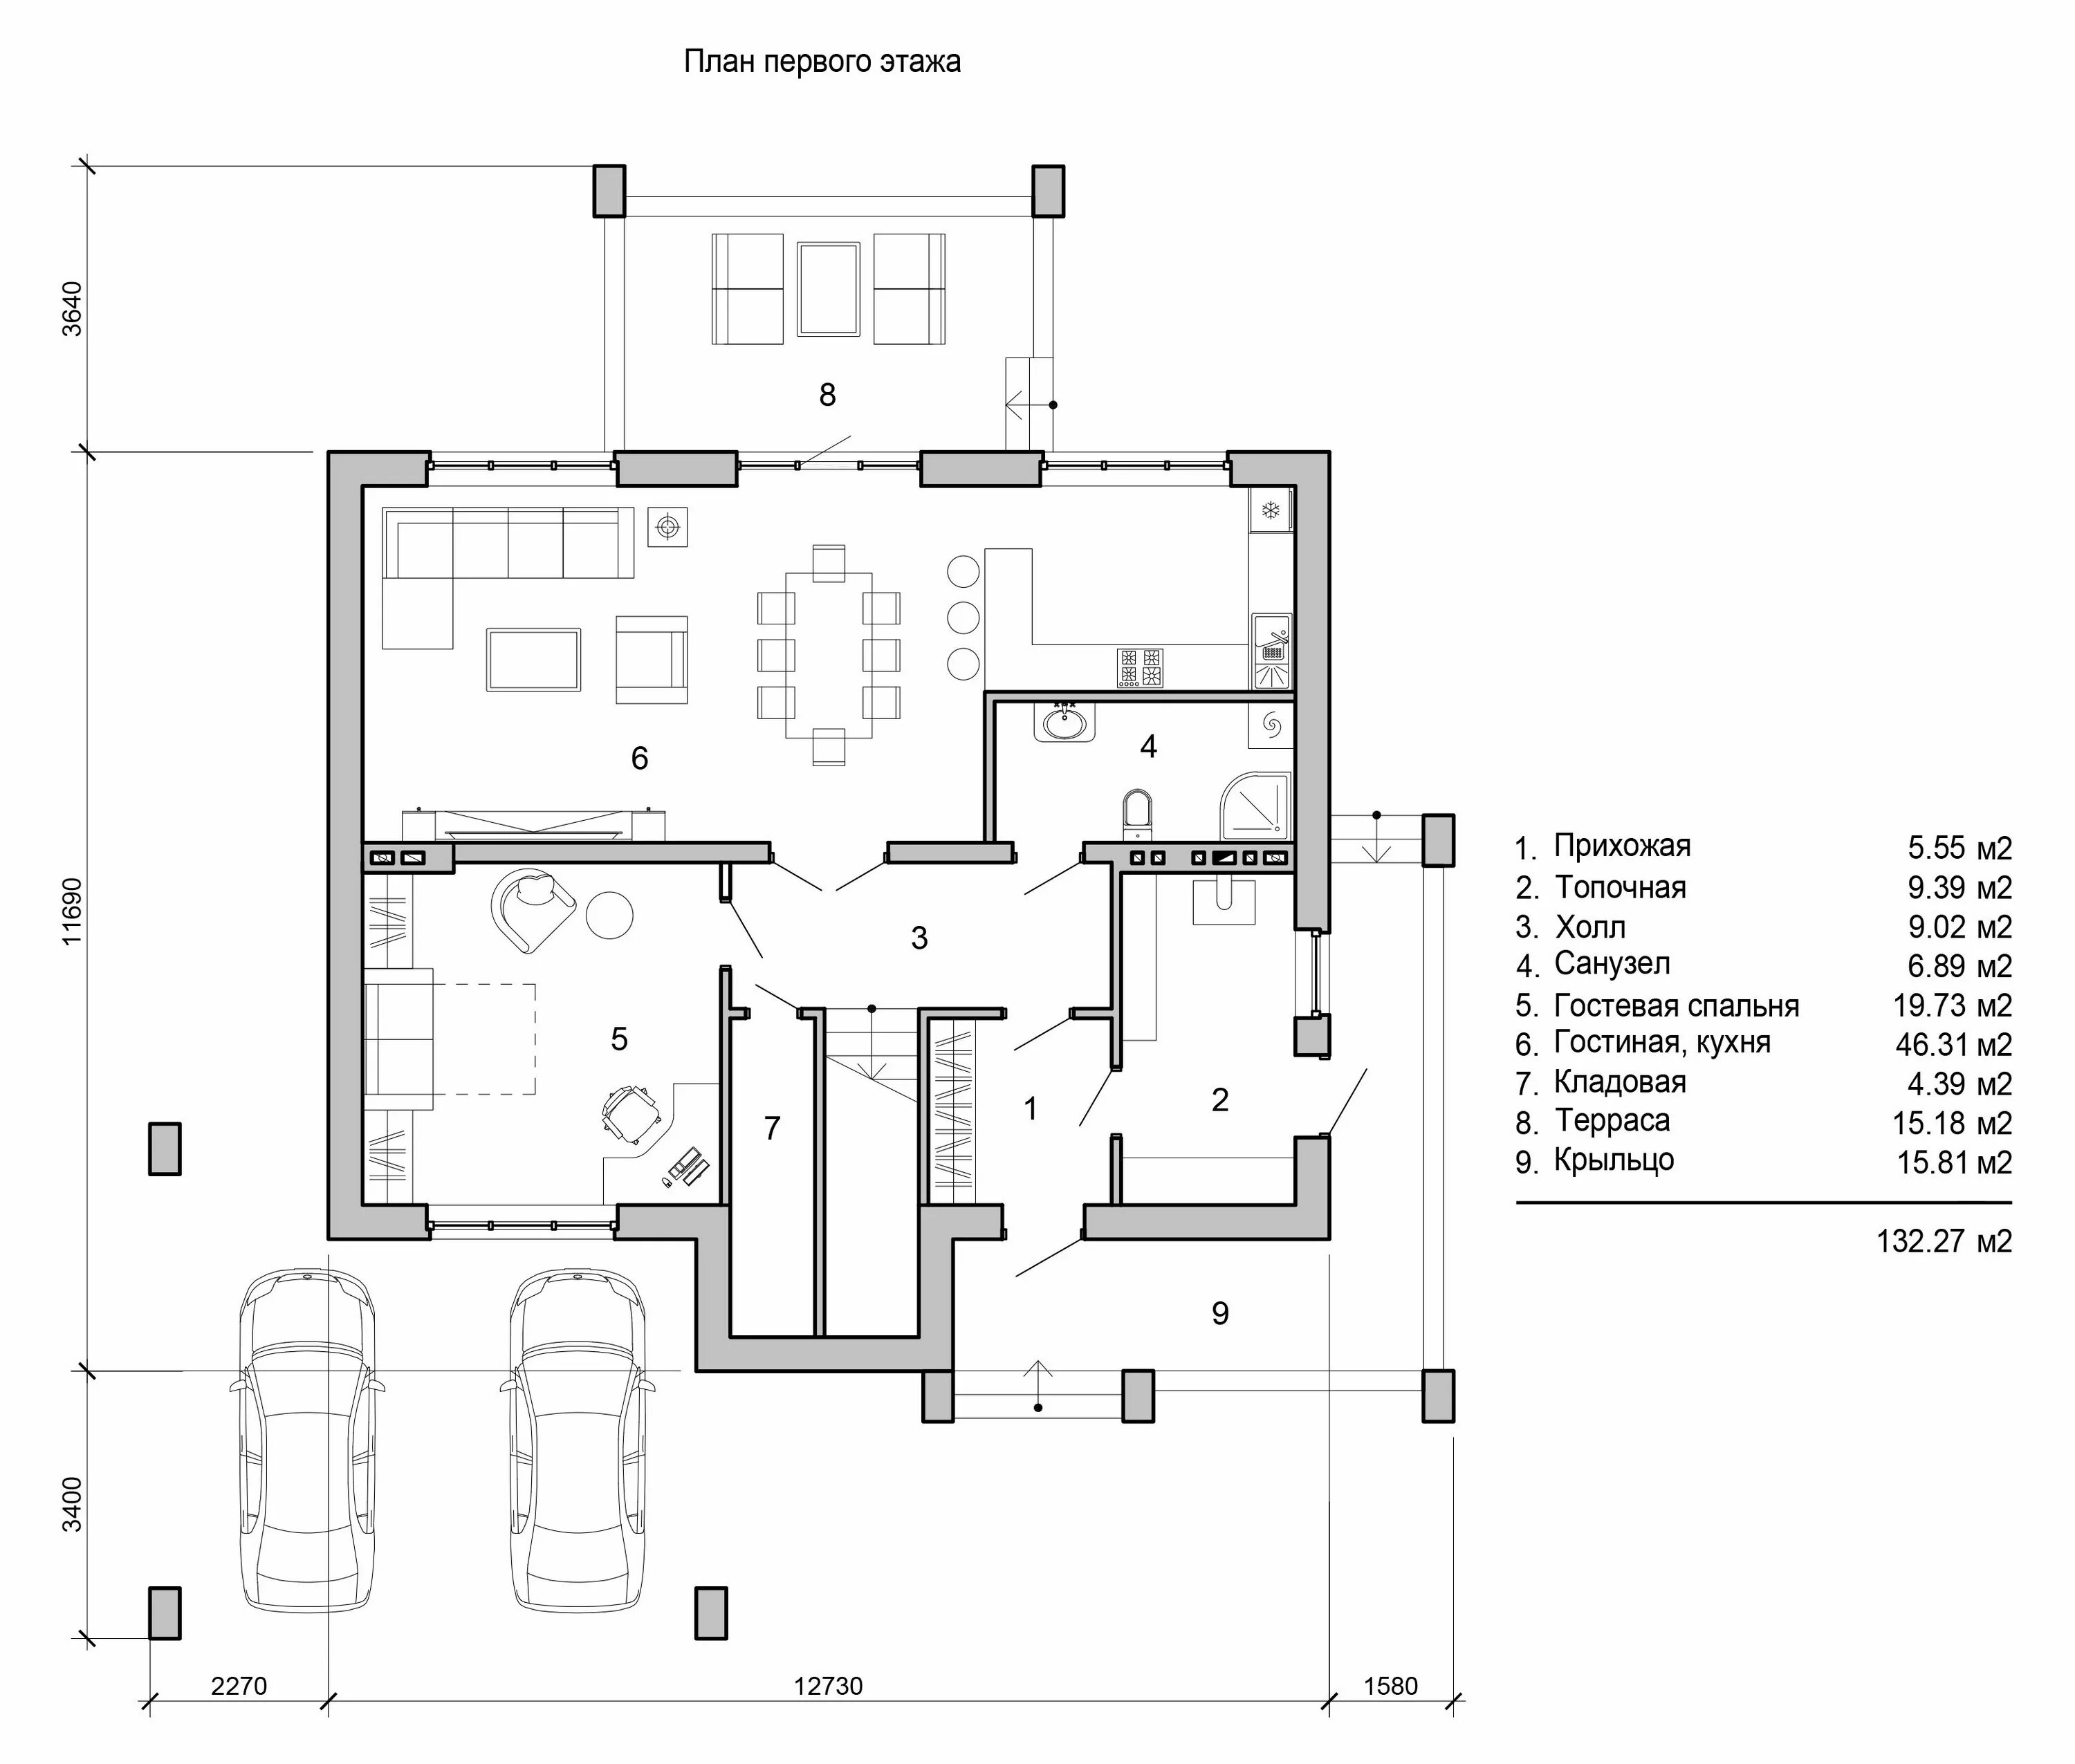 Размеры первого этажа. План первого этажа. План коттеджа. План коттеджа 1 этаж. Чертежи планировок домов.